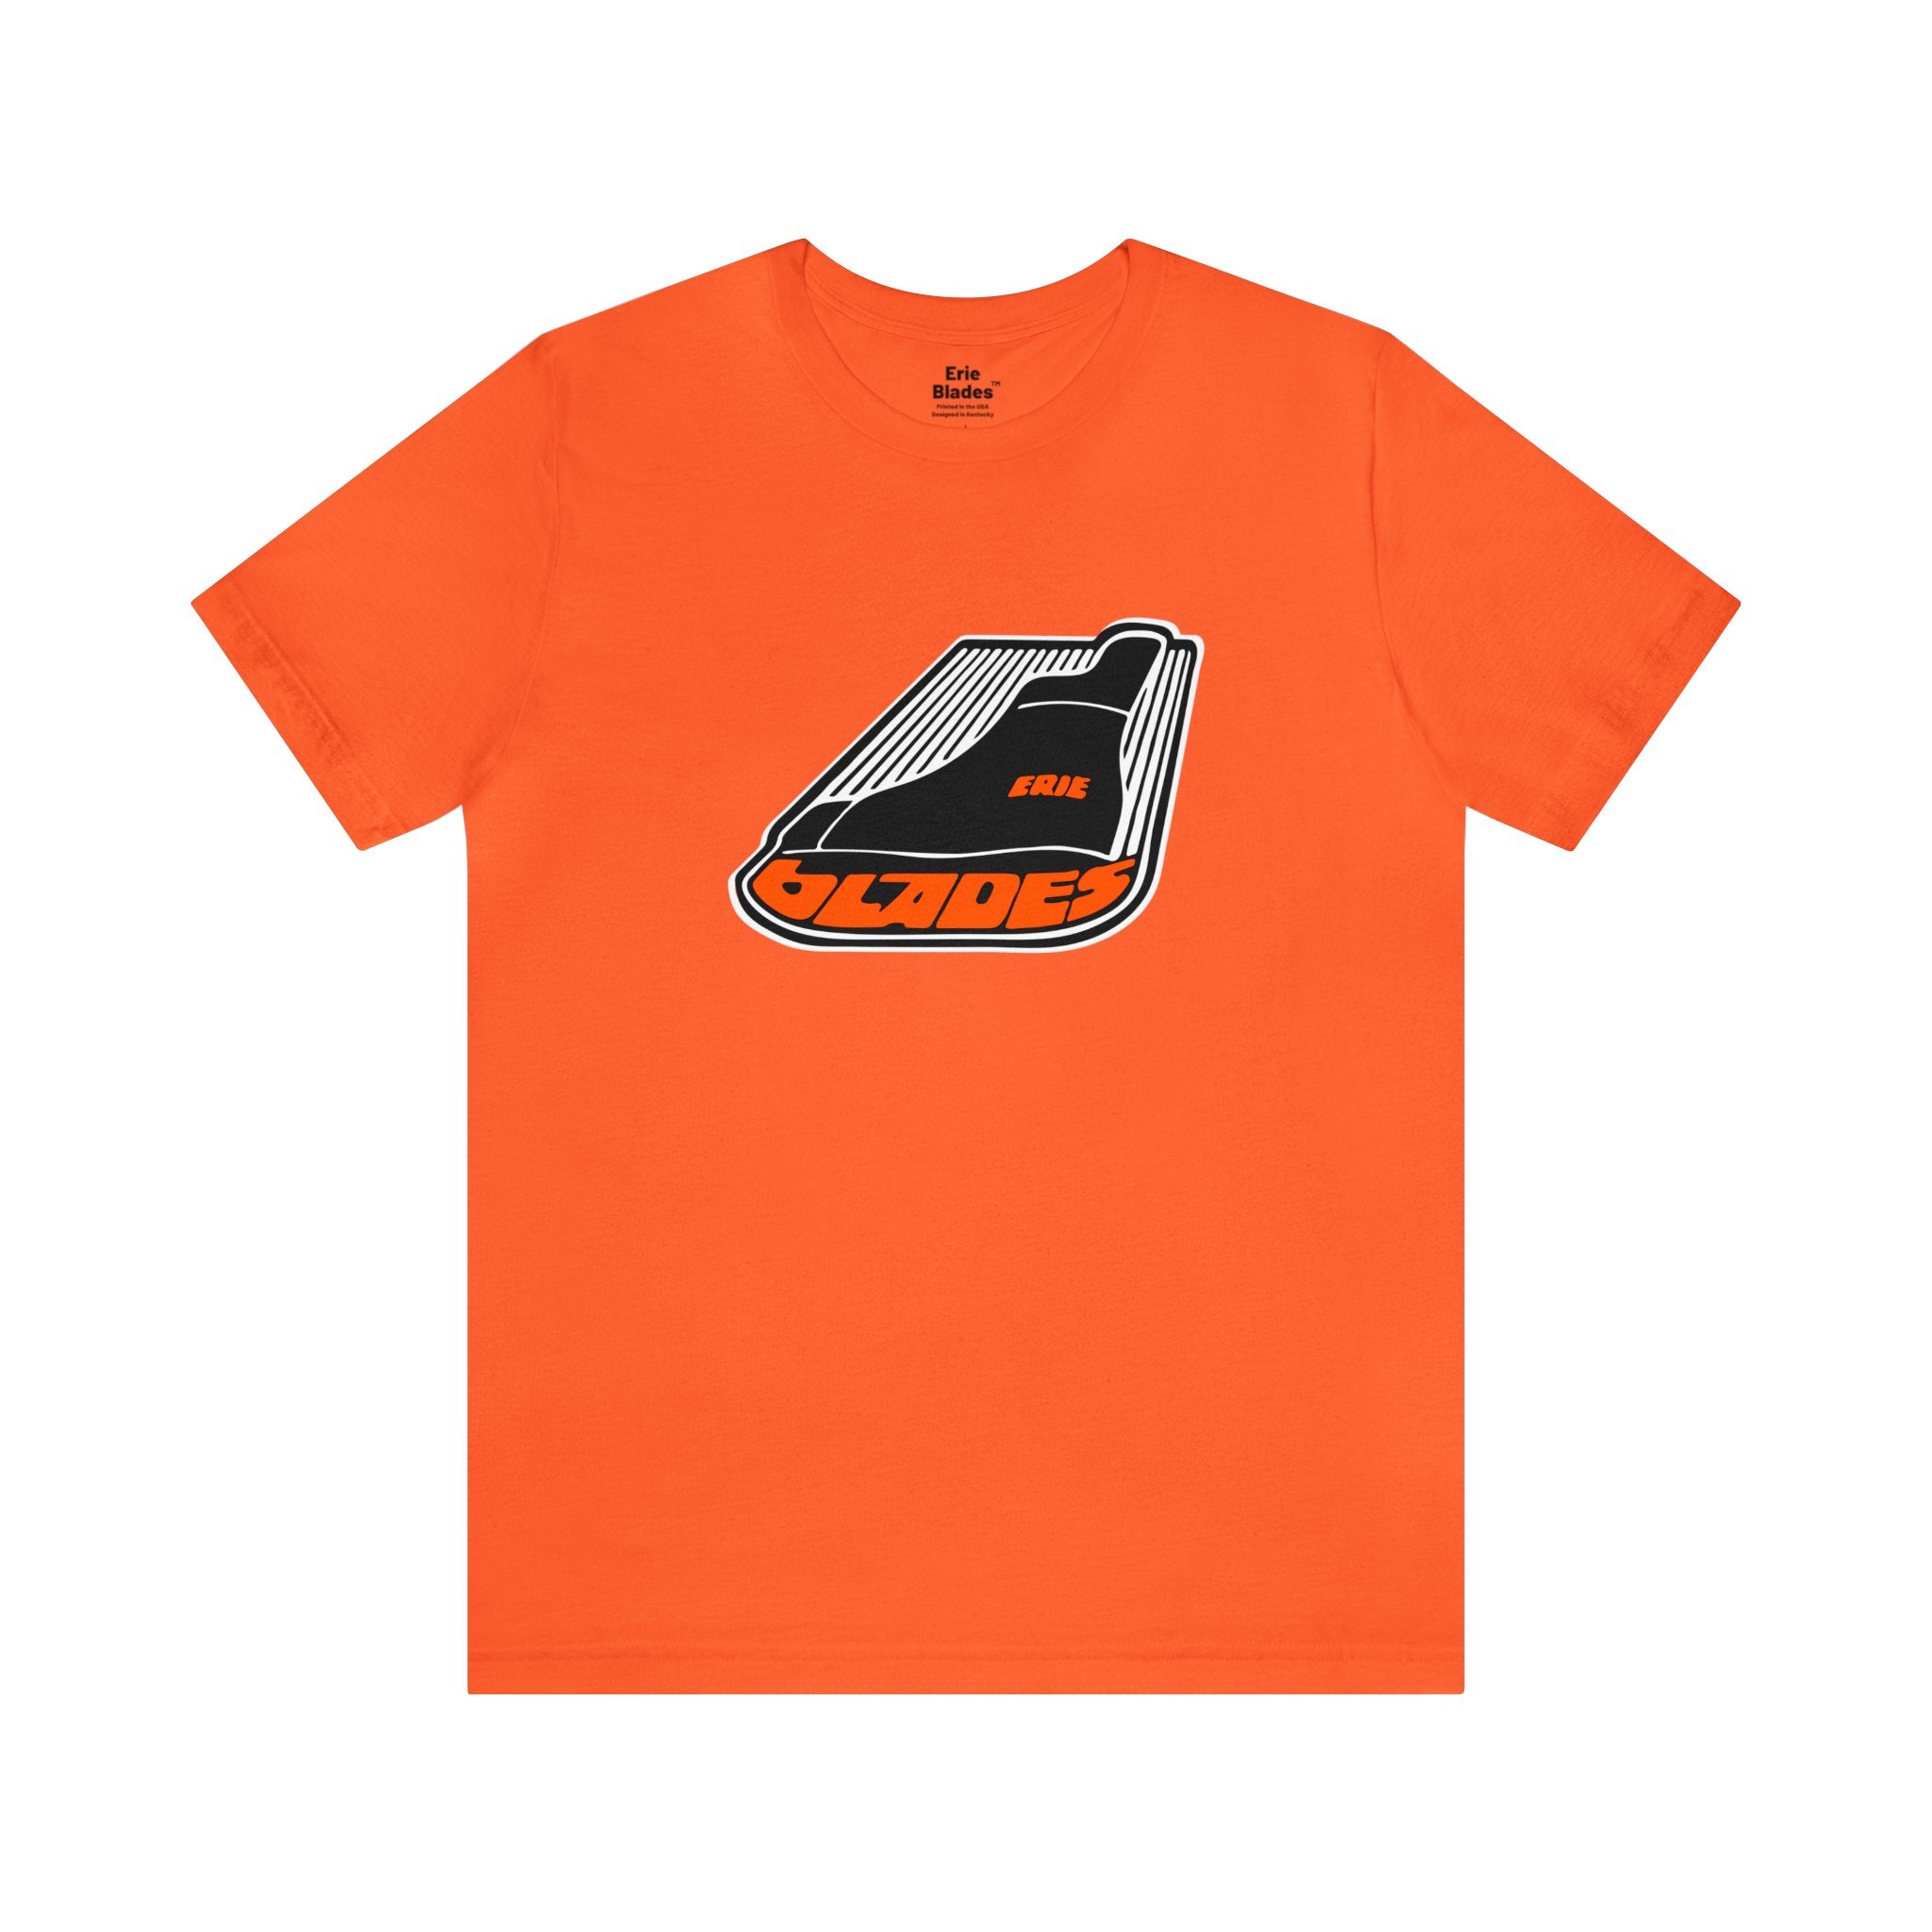 Erie Blades™ T-Shirt (Premium Lightweight)